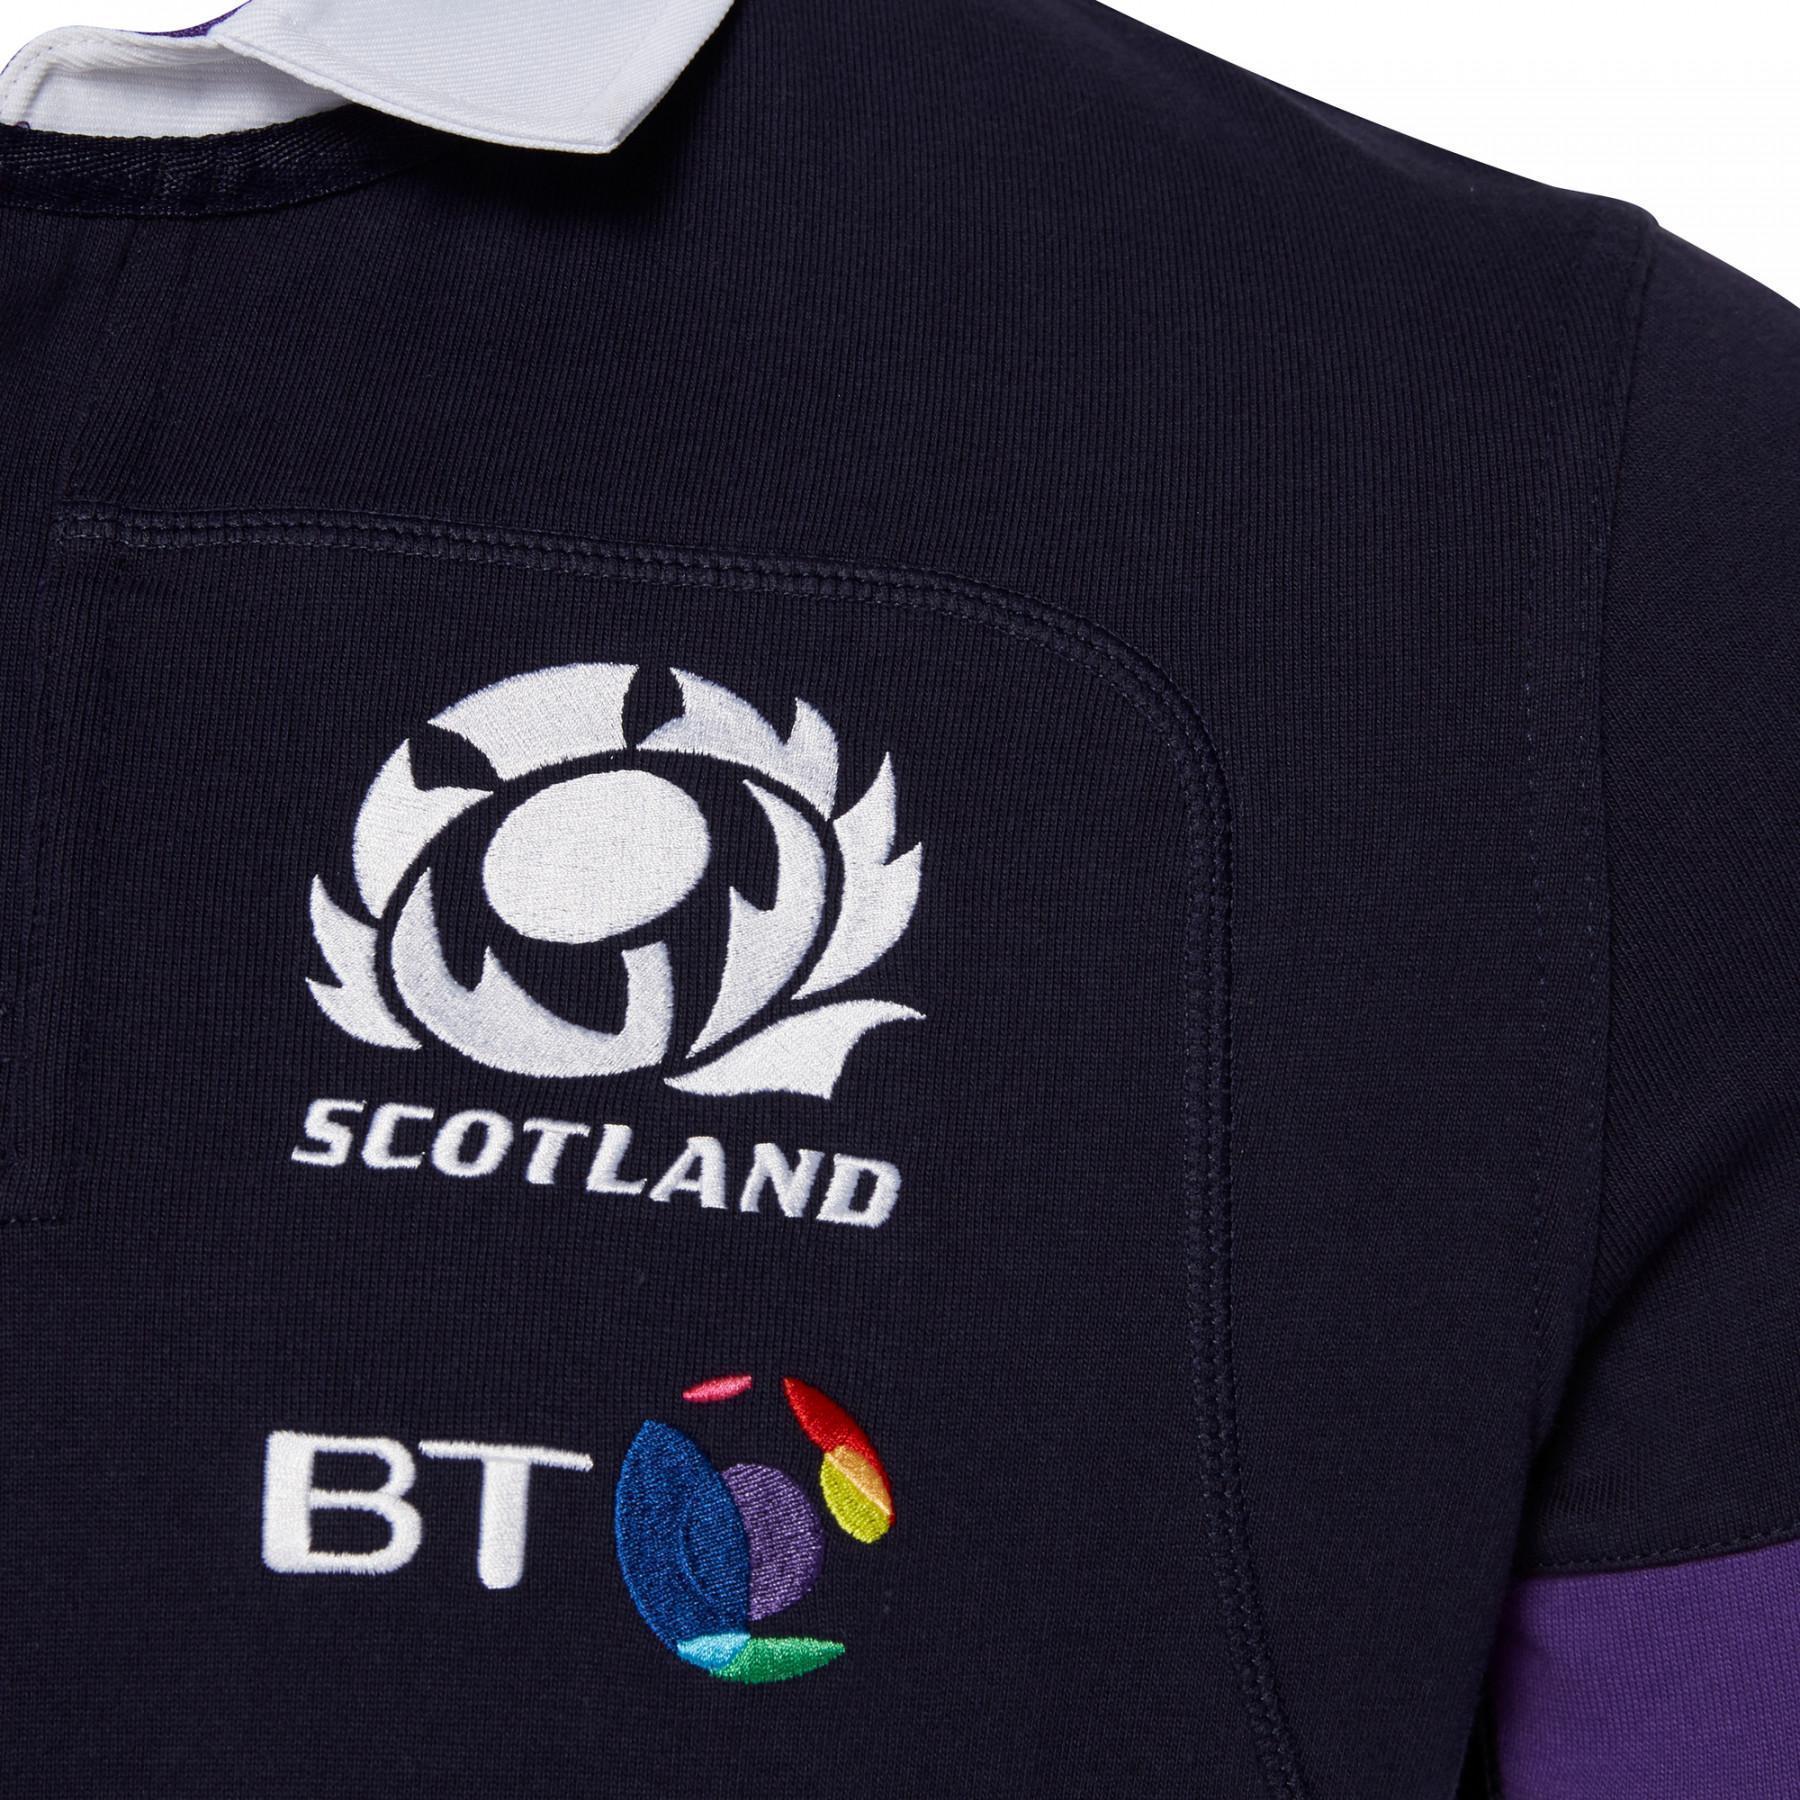 Home jersey katoen Écosse Rugby 2017-2018